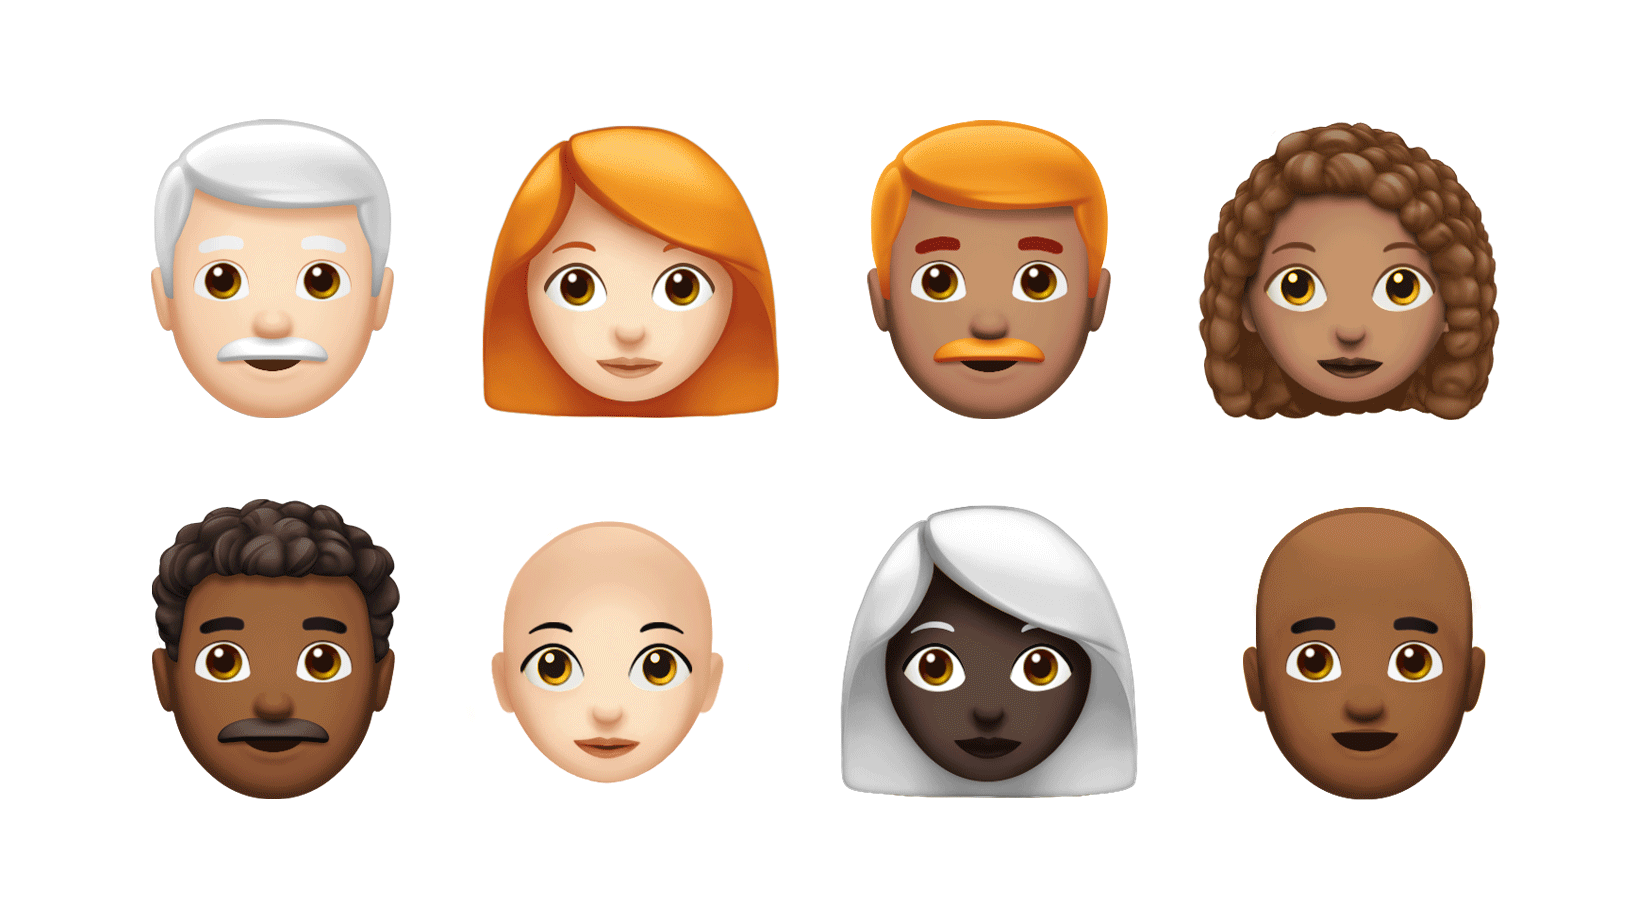 Deux rangées de nouveaux emoji, dont certains avec des cheveux gris, roux ou bouclés.